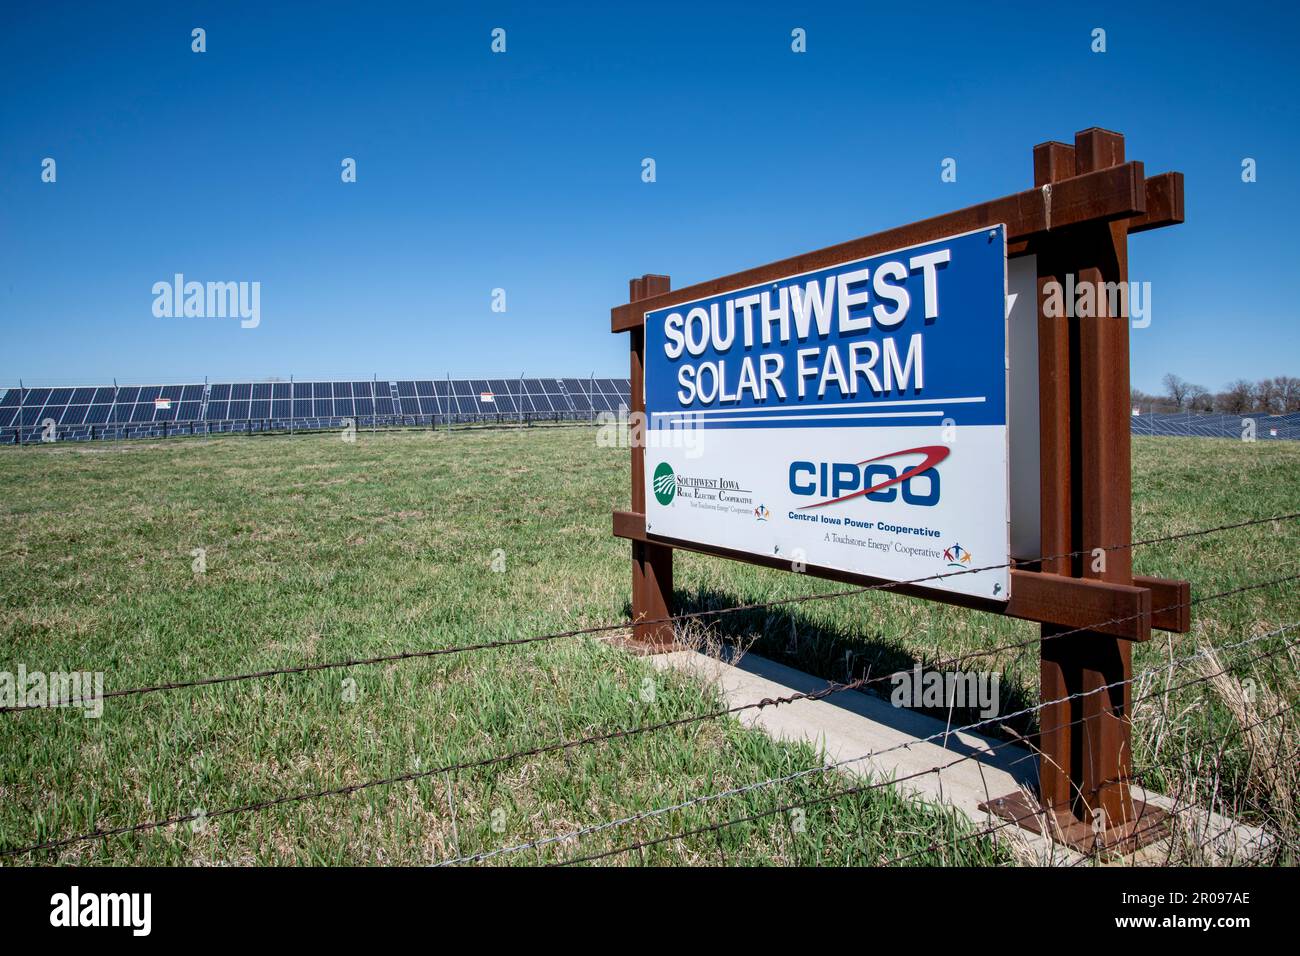 Corning, Iowa. Southwest Iowa Solar Farm. Minisito di Southwest Solar. Produce elettricità molto al di sotto di quella dell'energia solare su scala residenziale. Foto Stock